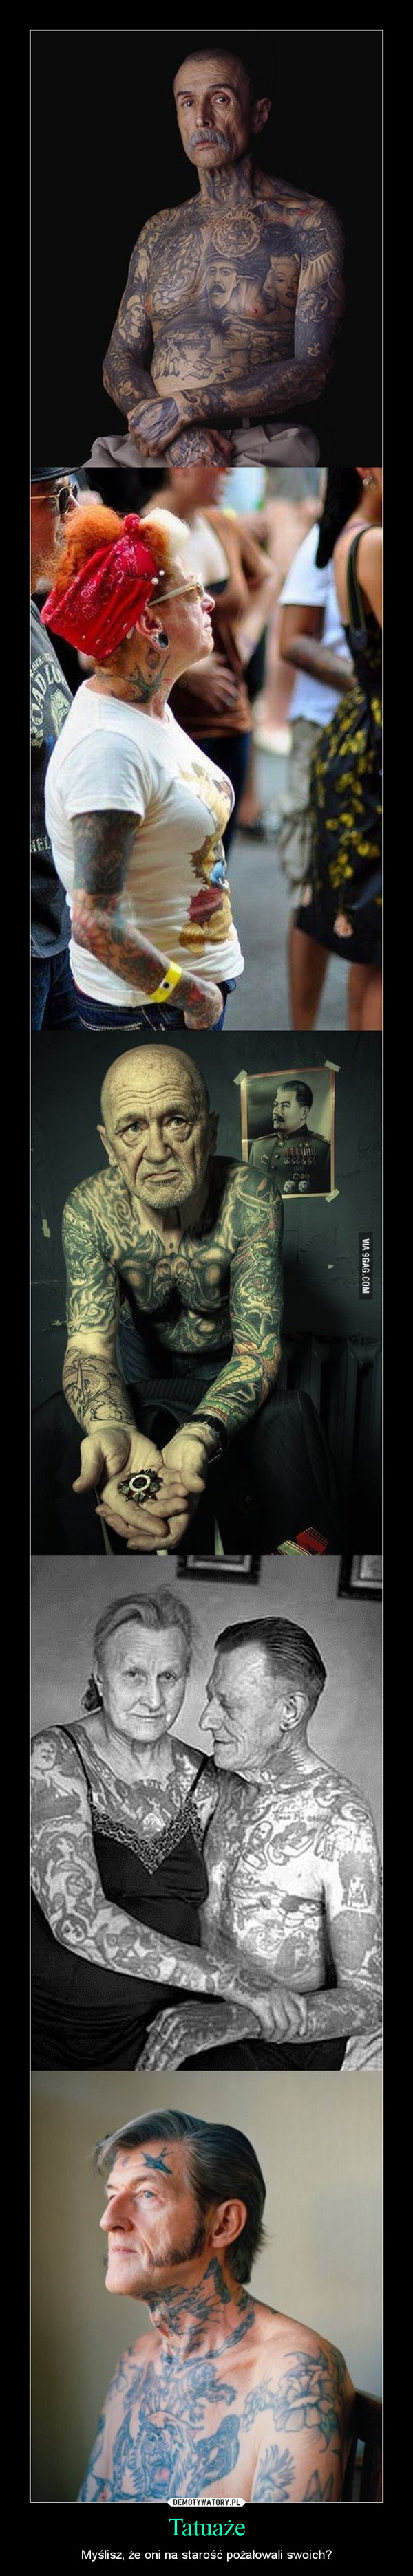 Tatuaże – Myślisz, że oni na starość pożałowali swoich? 